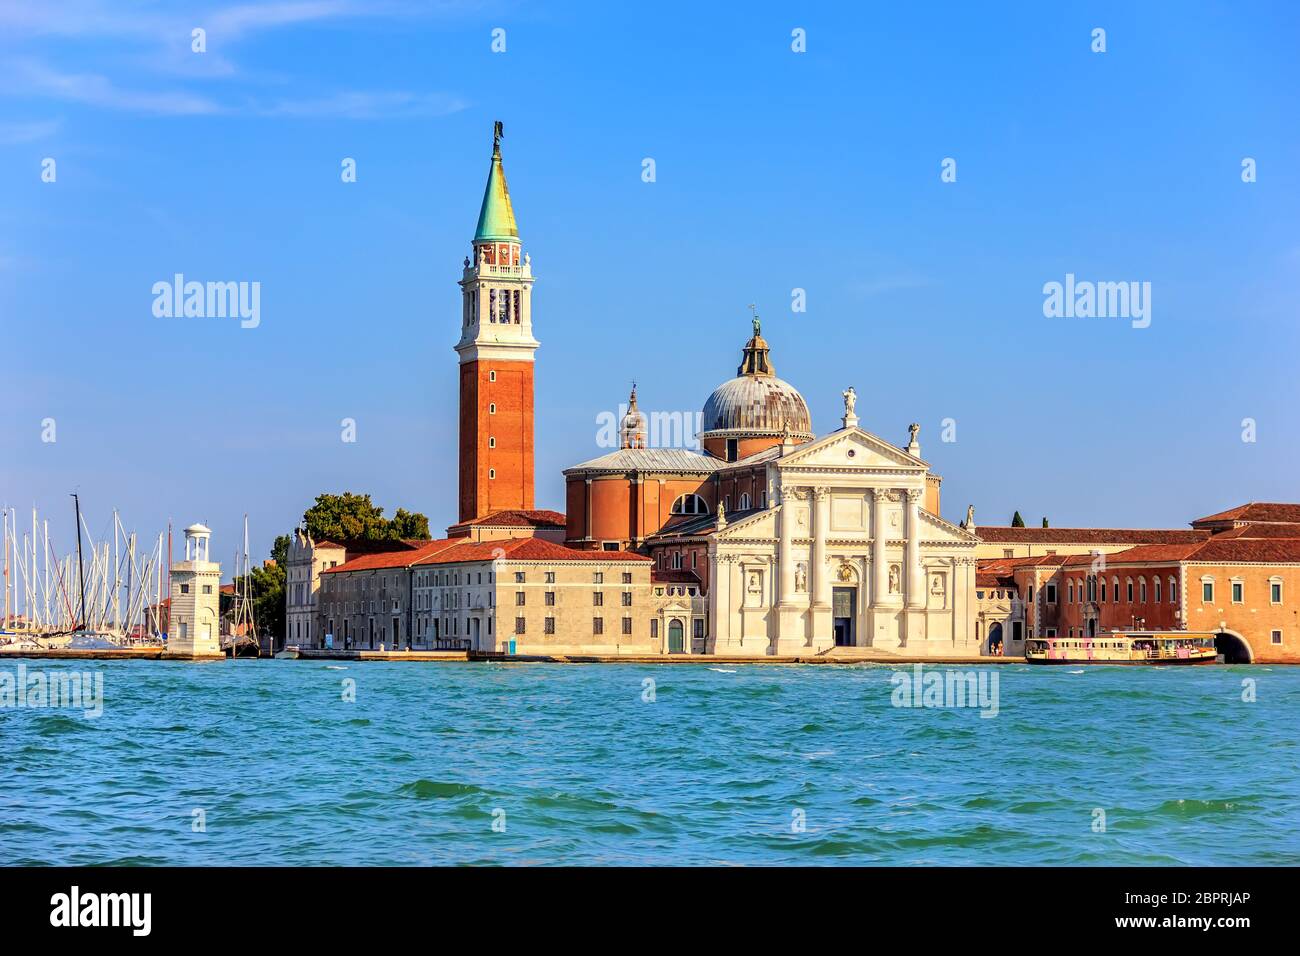 San Giorgio Maggiore Island in the lagoon of Venice, Italy. Stock Photo